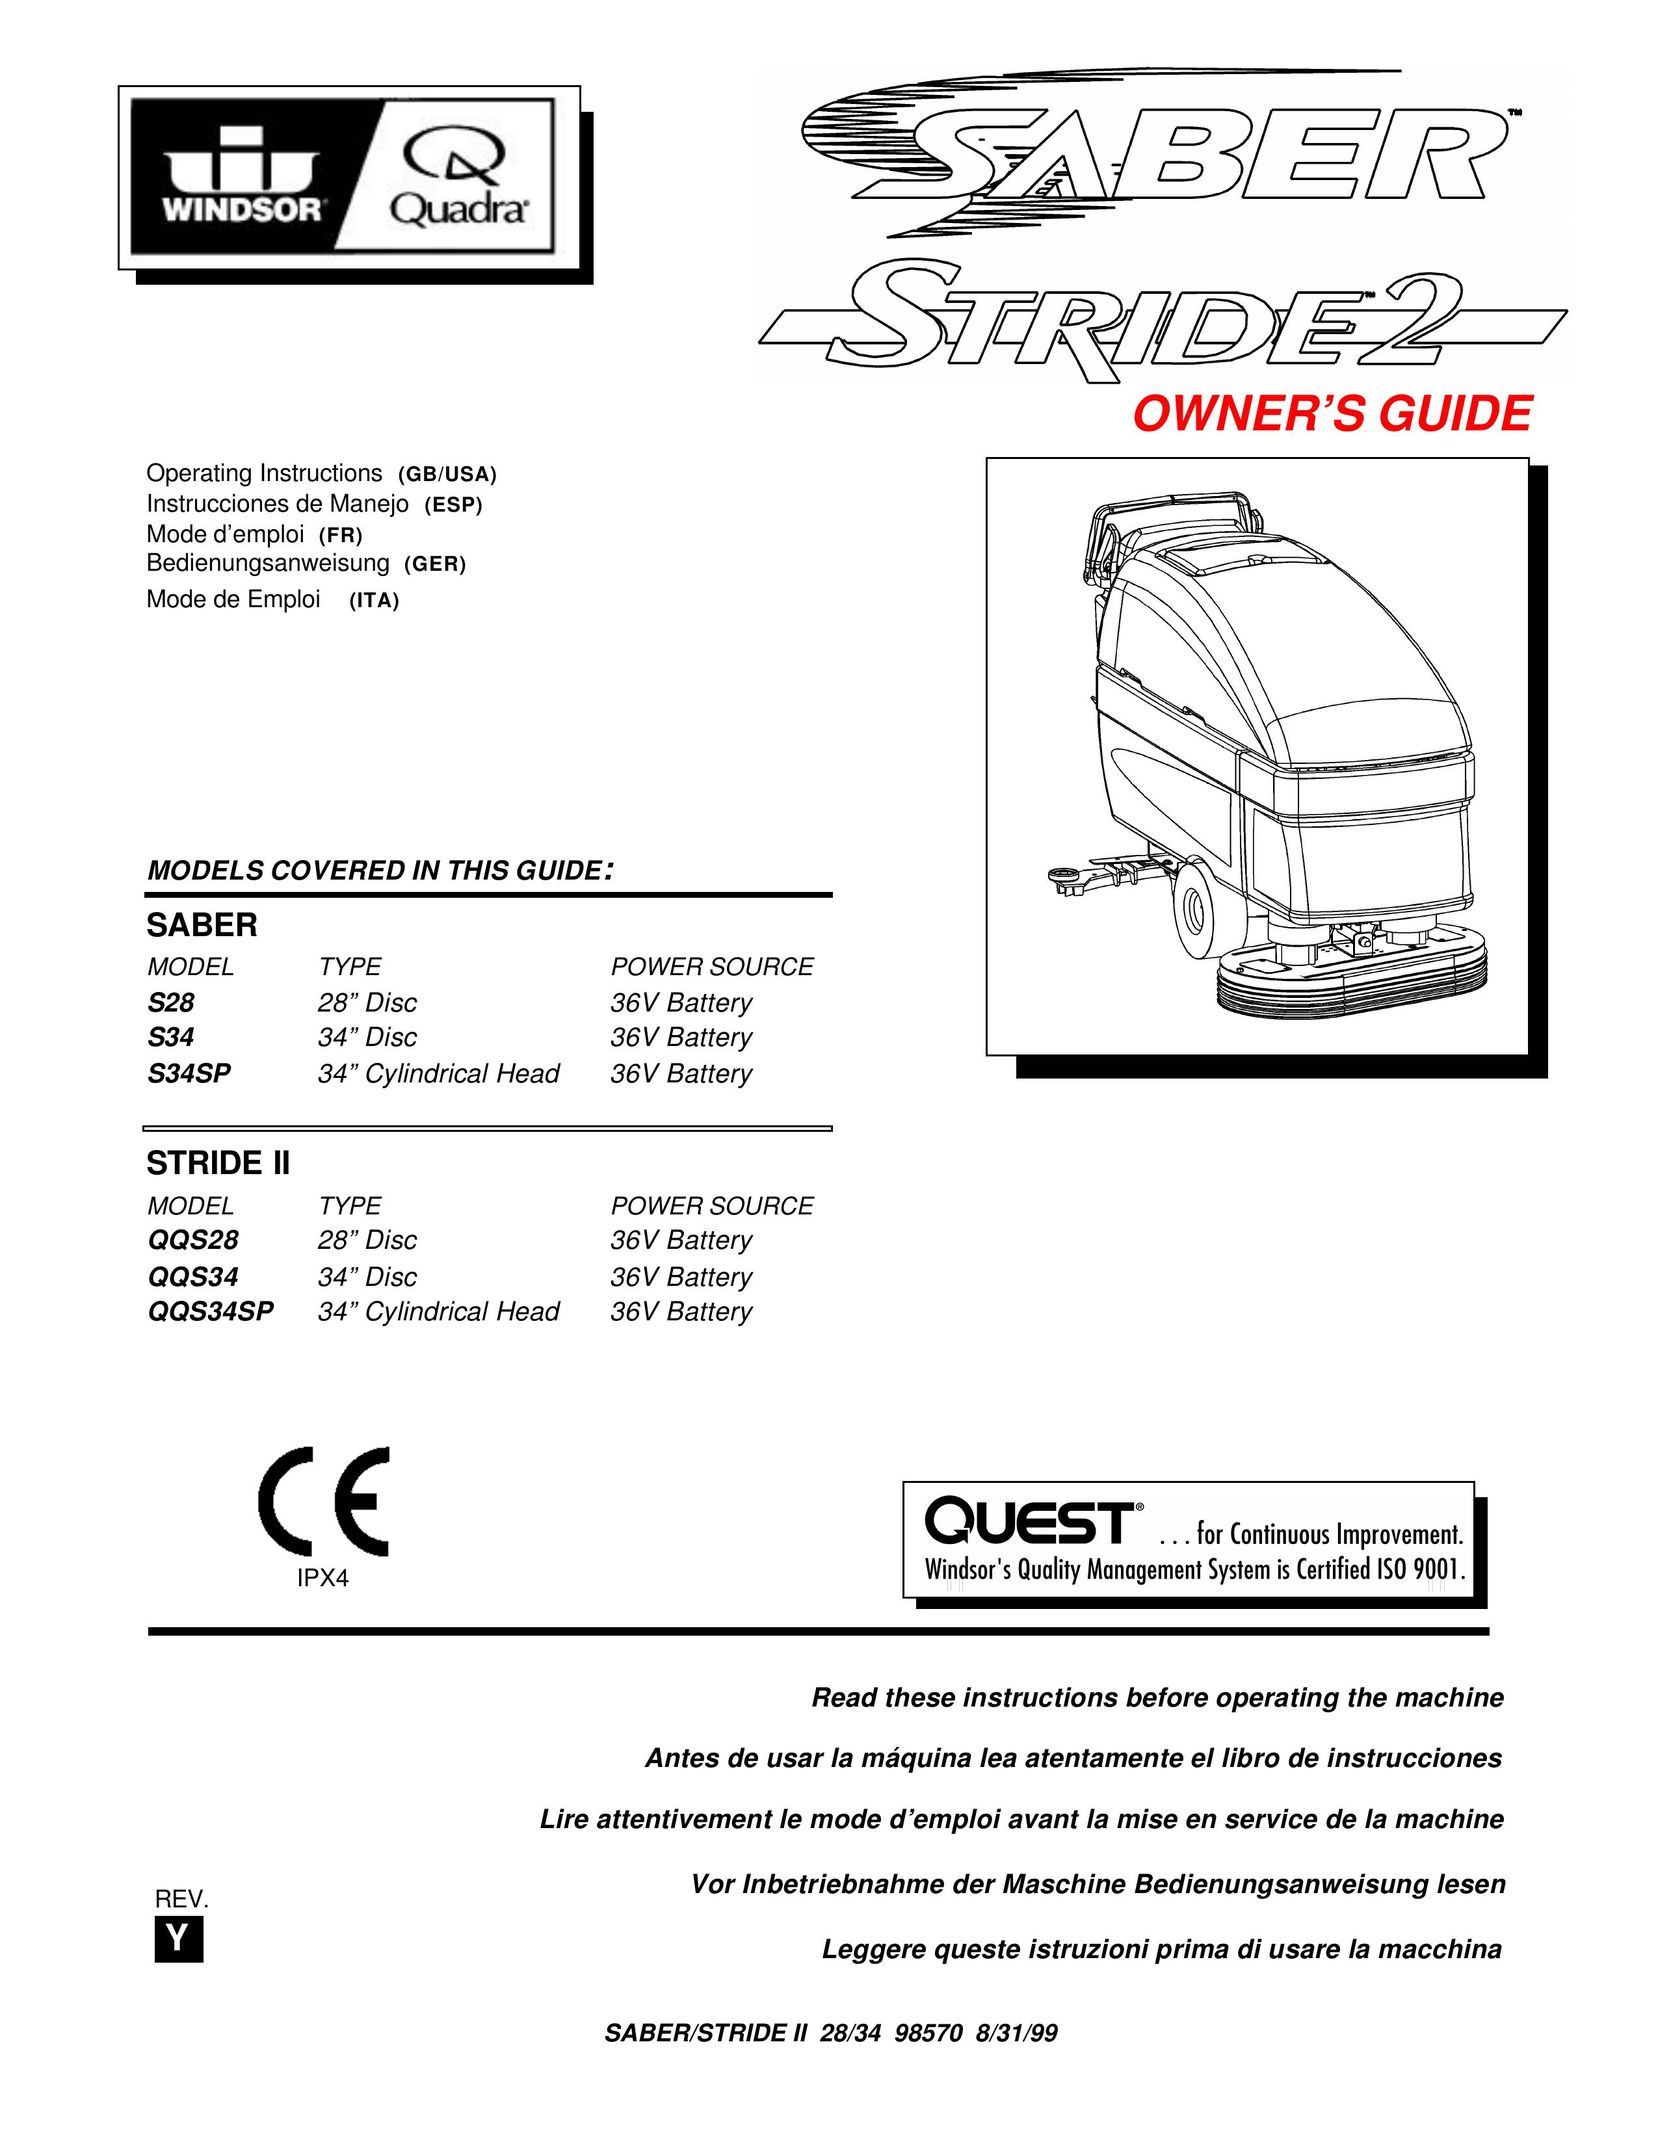 Windsor QQS34 Sander User Manual